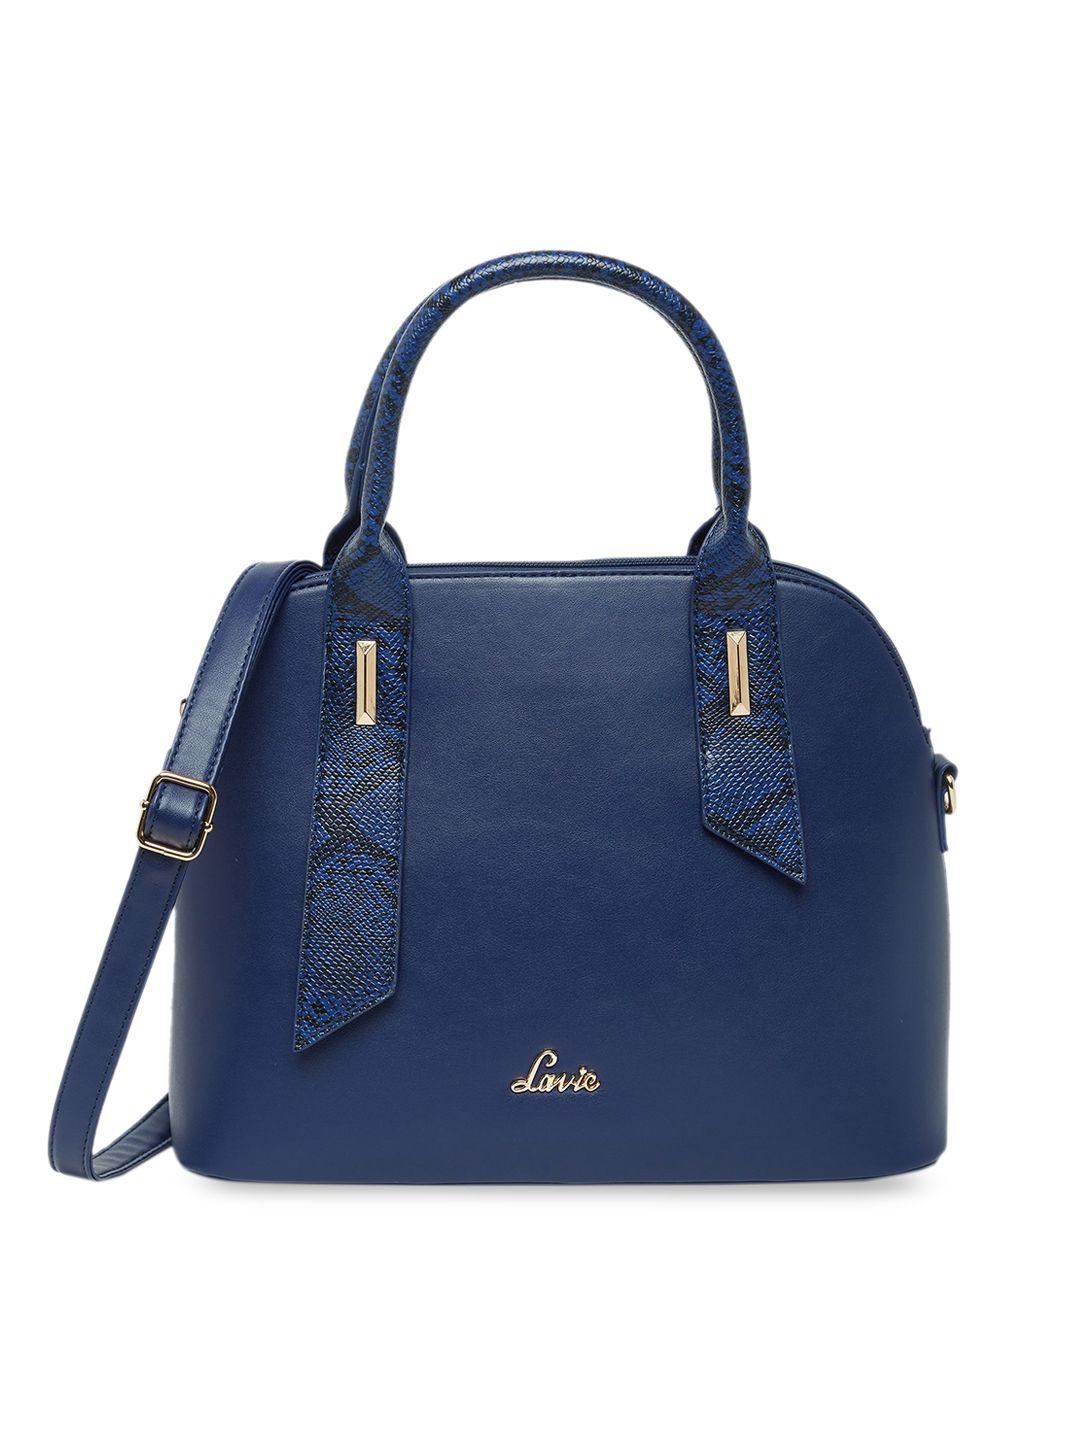 lavie navy blue textured structured handheld bag